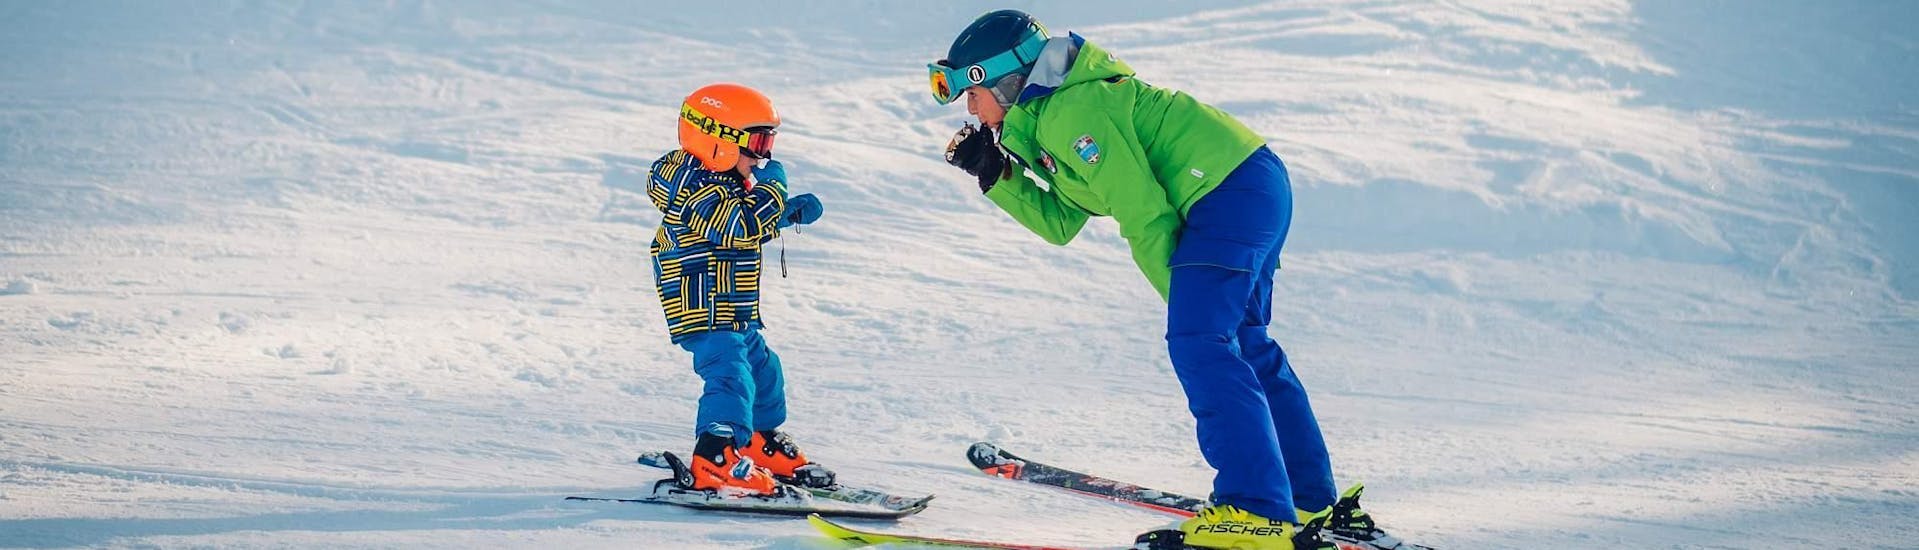 Il piccolo sciatore impara a sciare durante le lezioni private di sci per bambini - Tutti i livelli con un maestro della scuola di sci Scuola di Sci B.foxes.